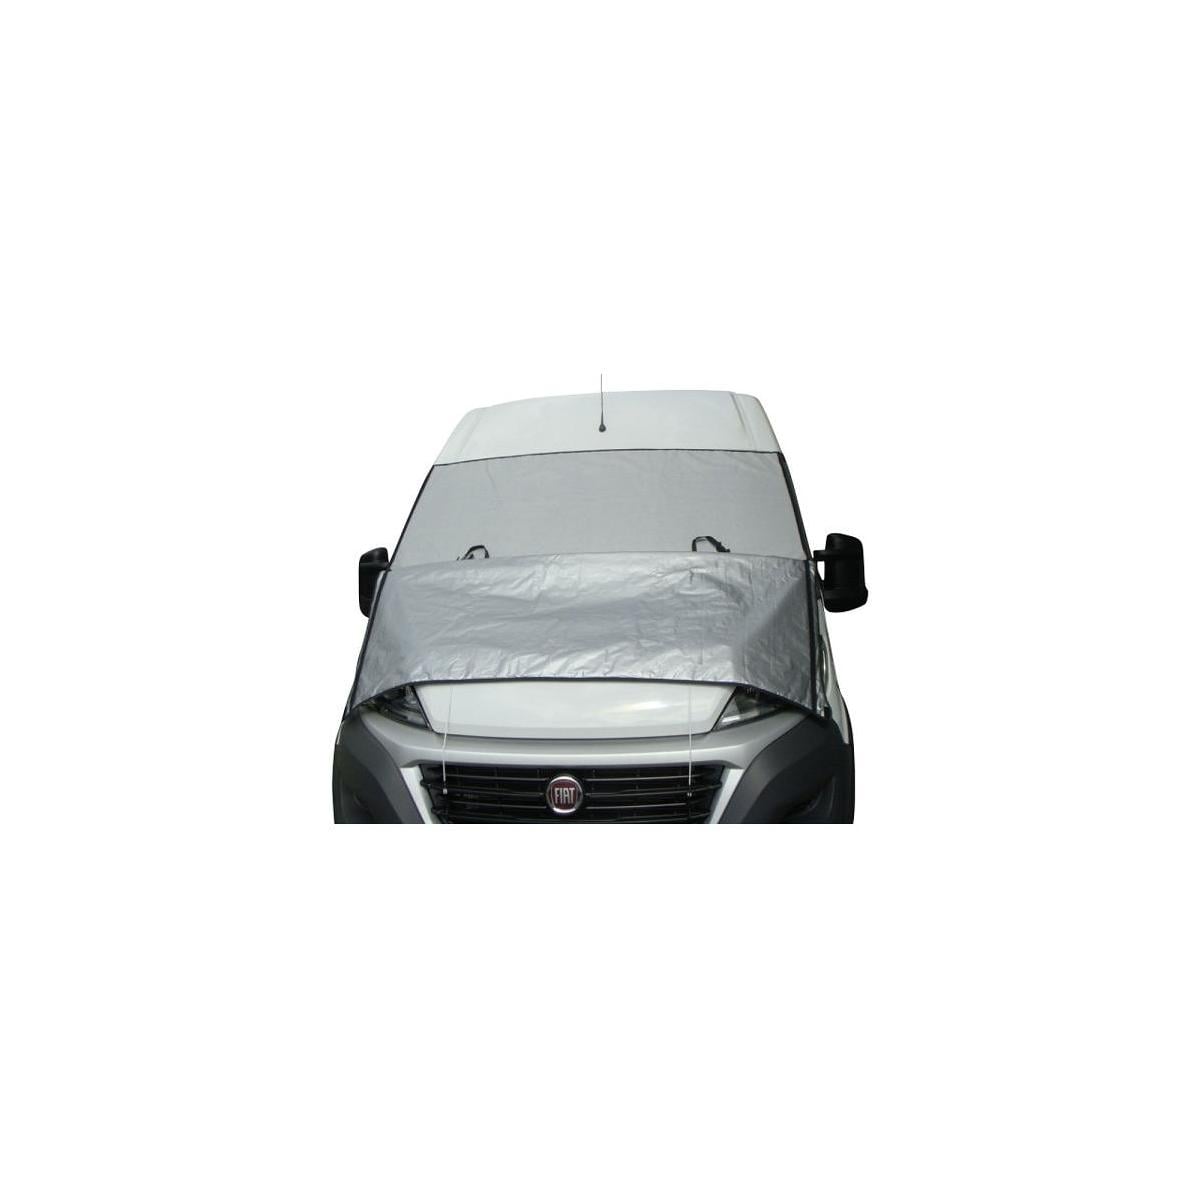 Tecon Covercraft Isolux Außenisoliermatte Frontscheibenabdeckung Fiat Ducato  X250/X290